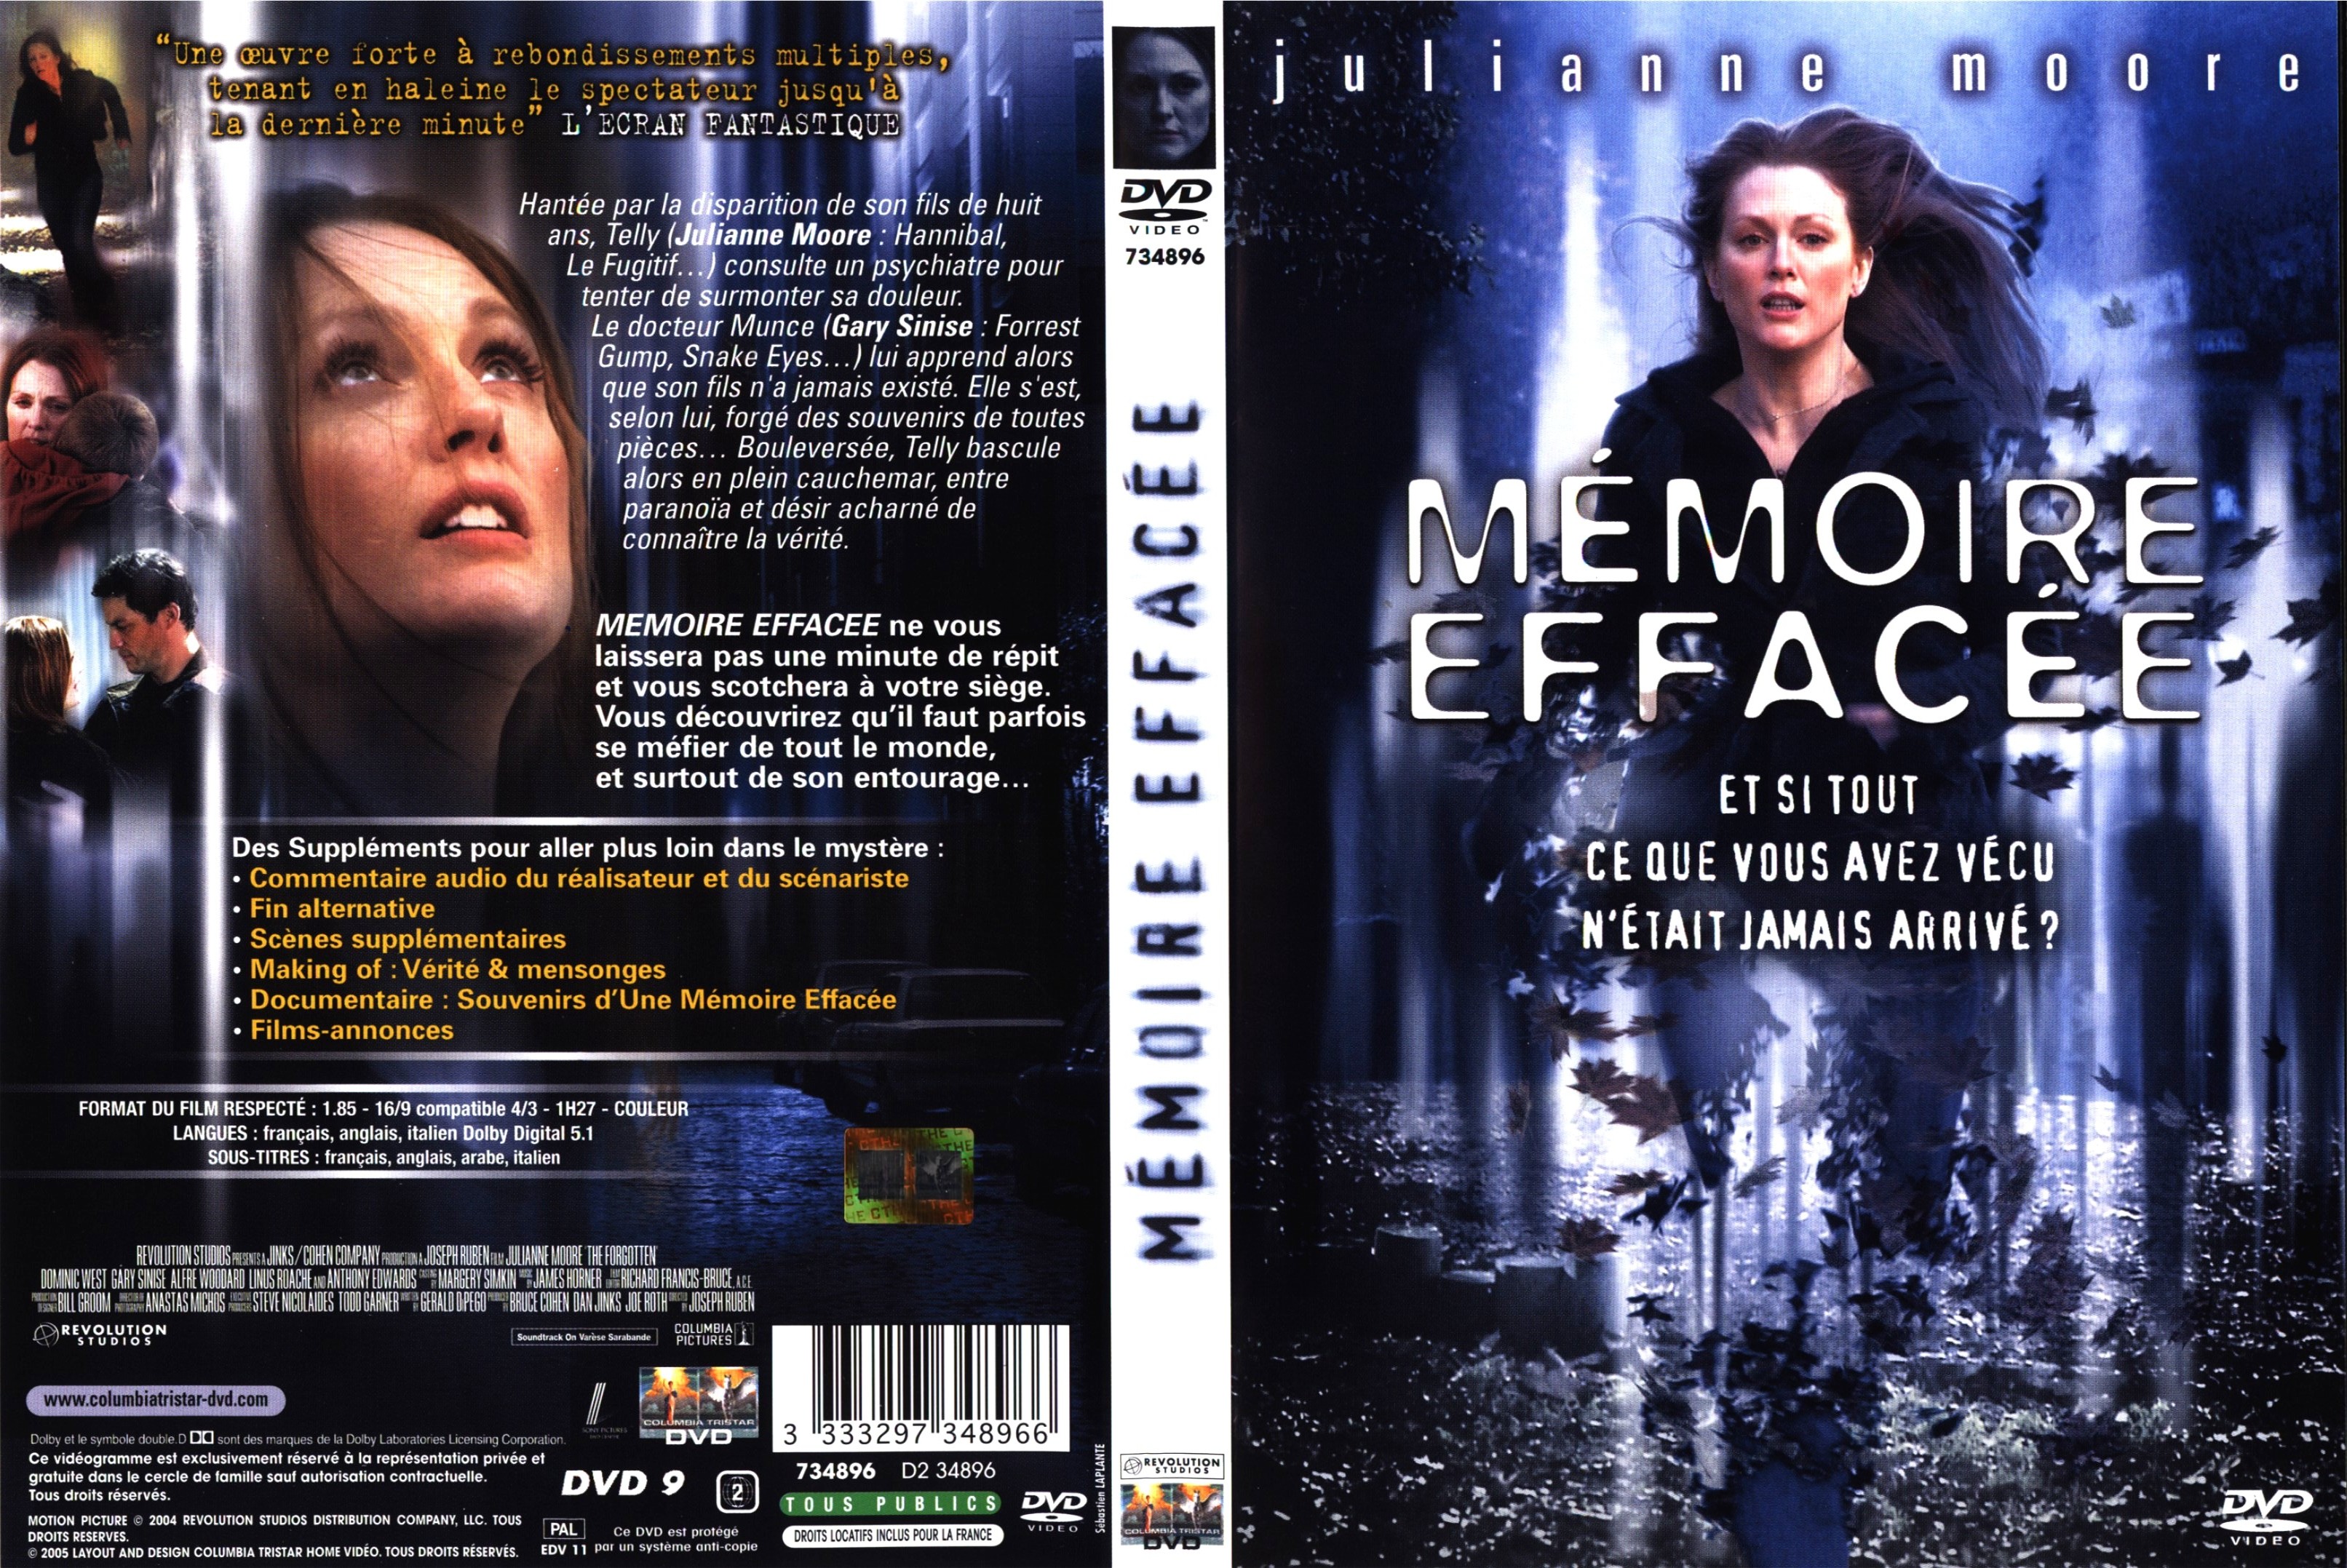 Jaquette DVD Memoire efface